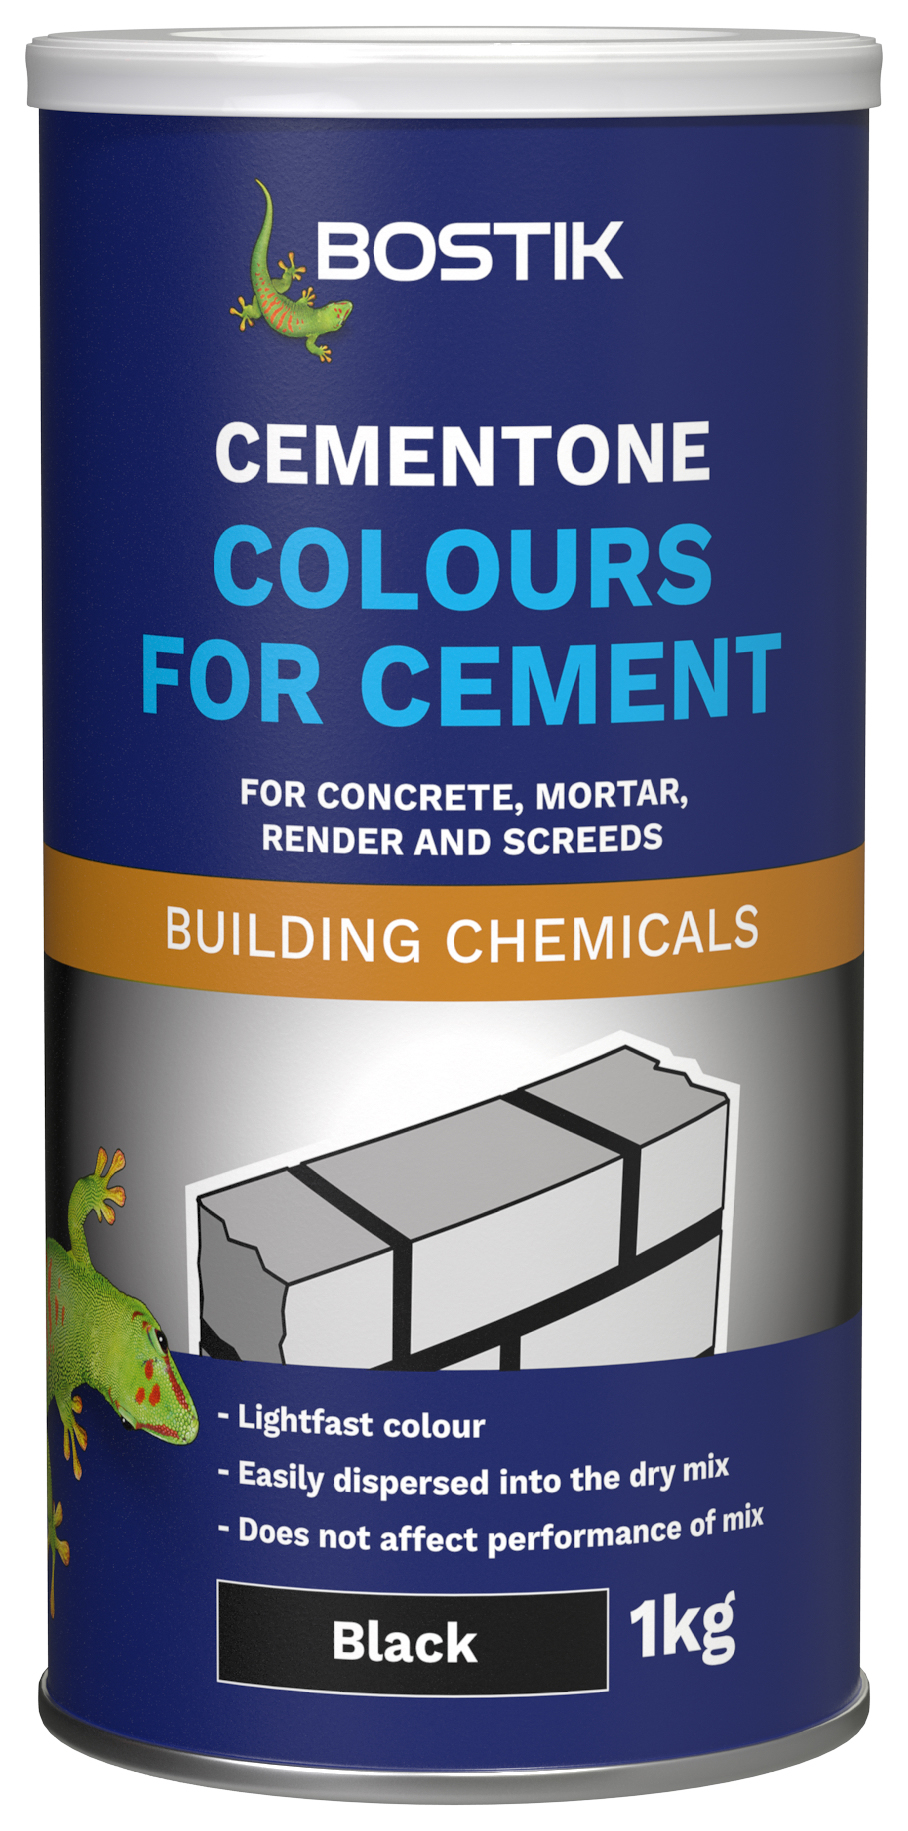 Image of Bostik 1kg Cementone Colours for Cement - Black